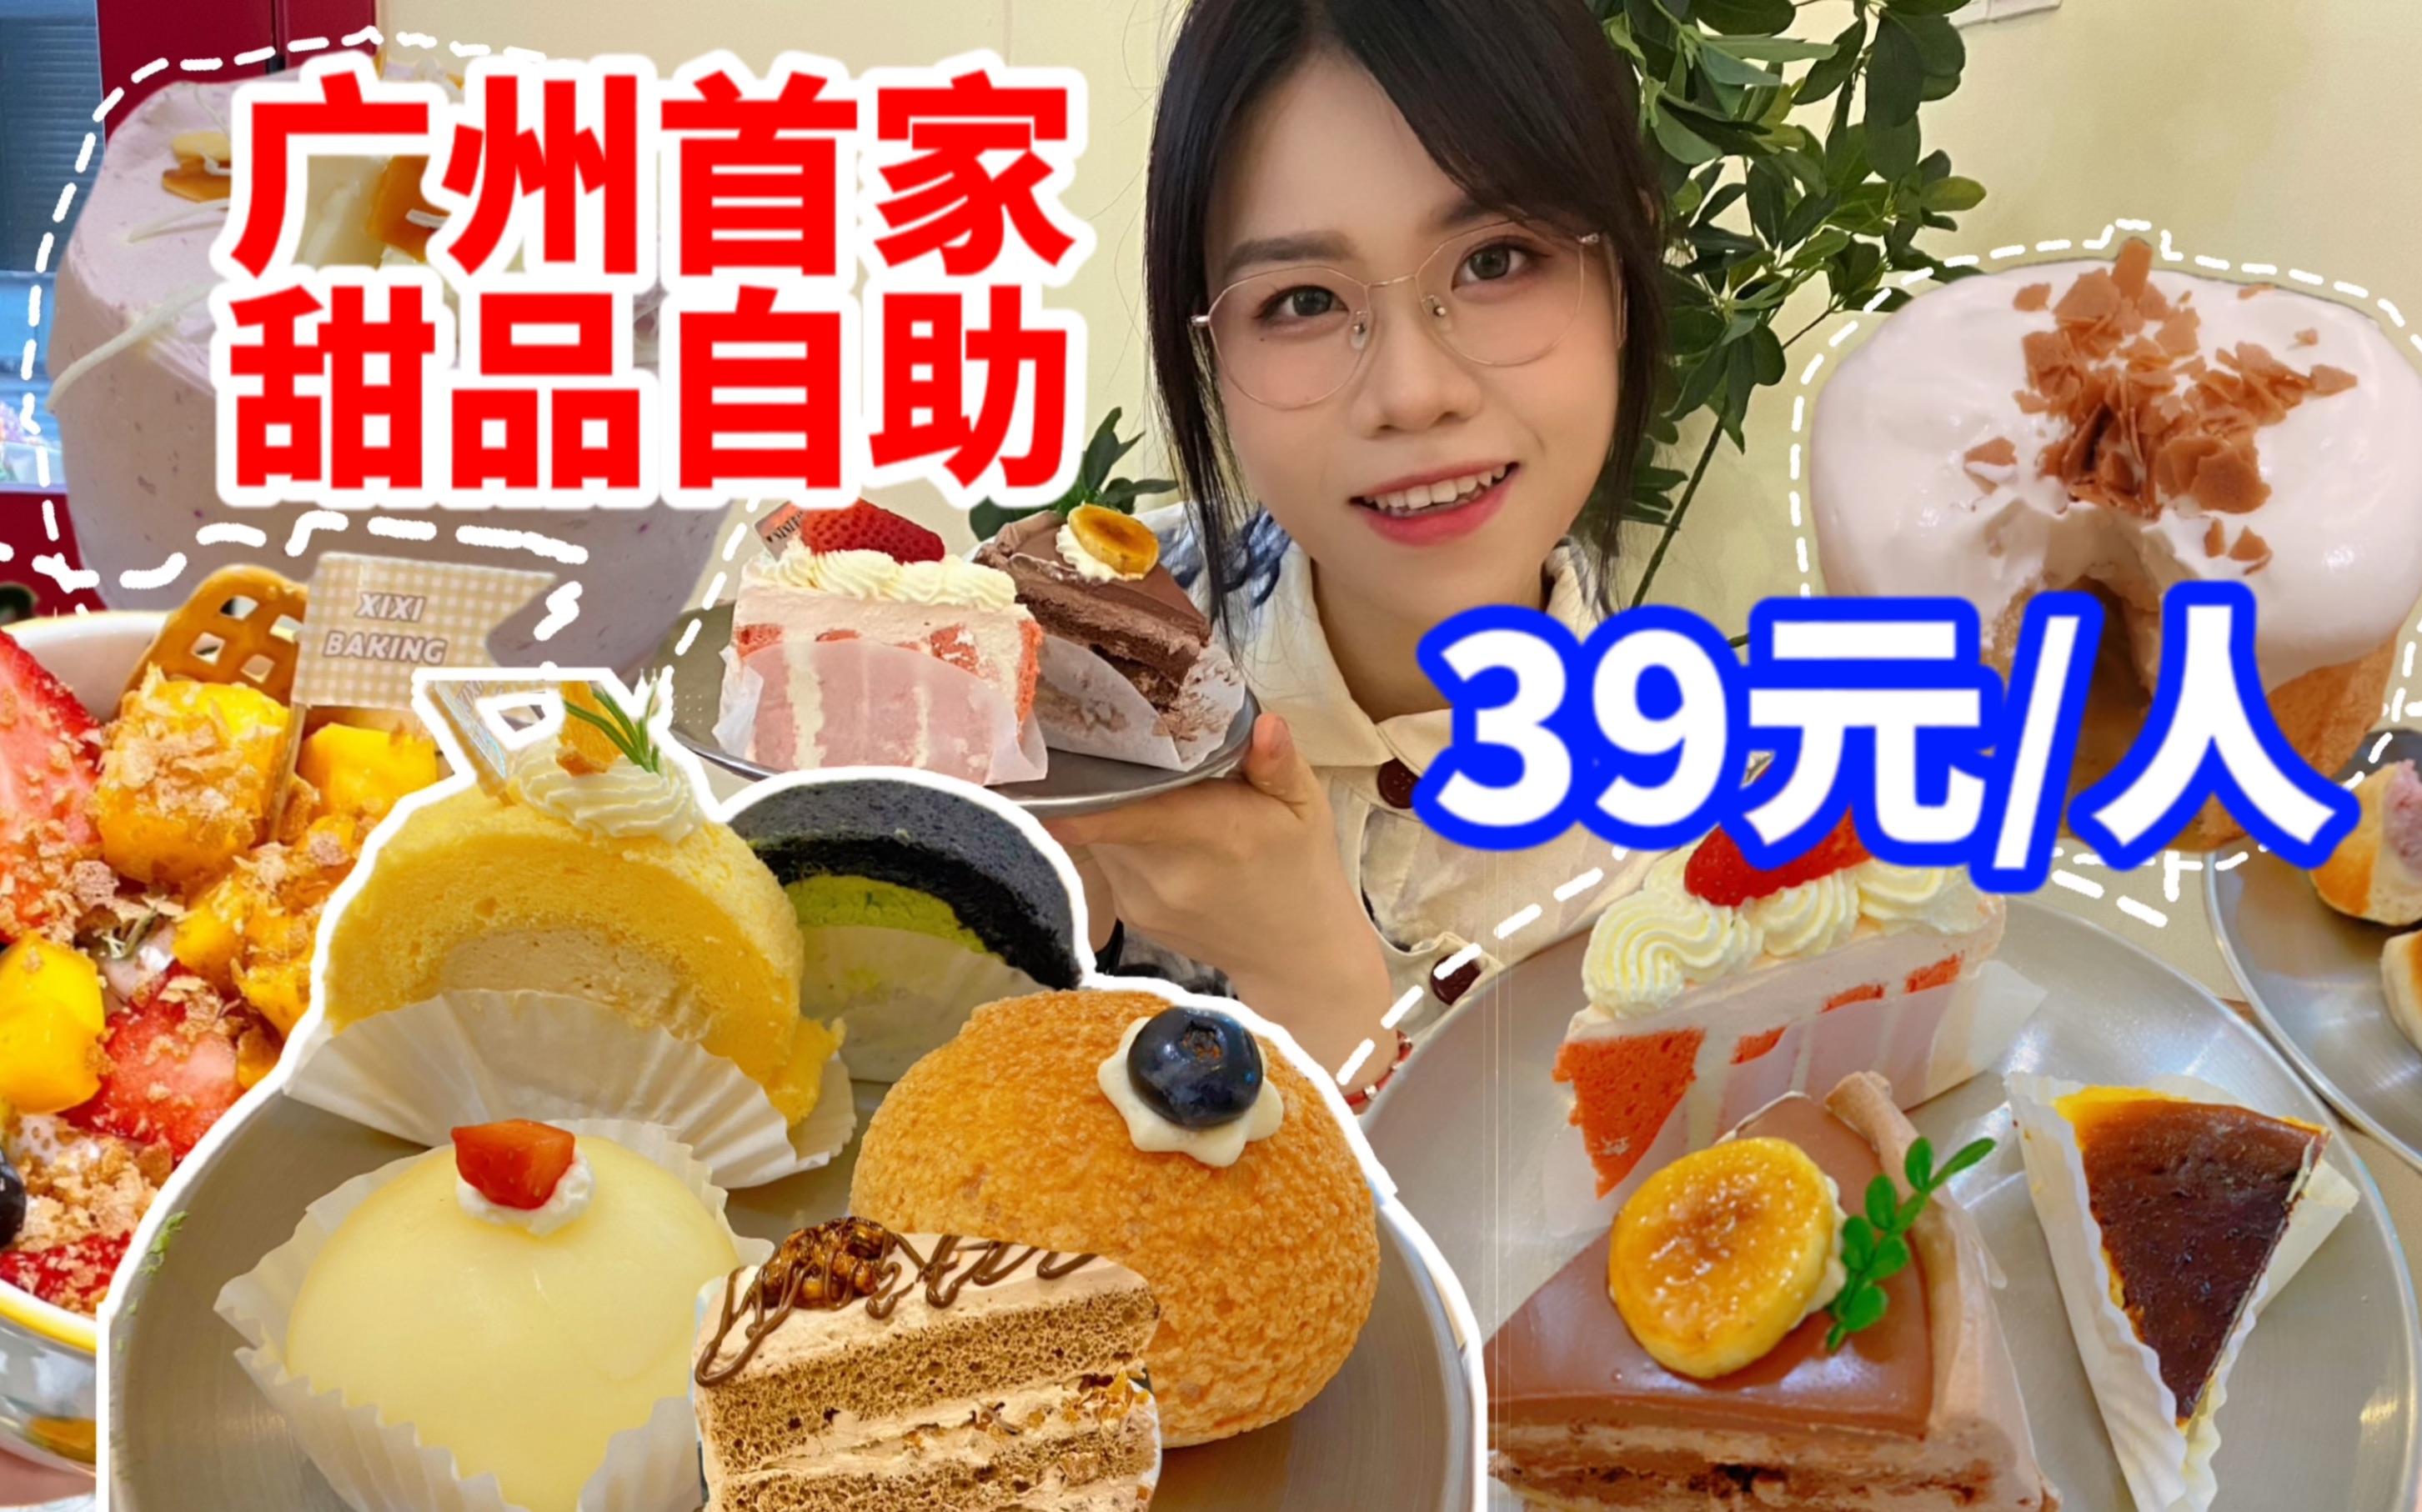 广州39/位的甜品面包自助！十几款小甜品无限畅吃！各种蛋糕面包实现甜品自由！